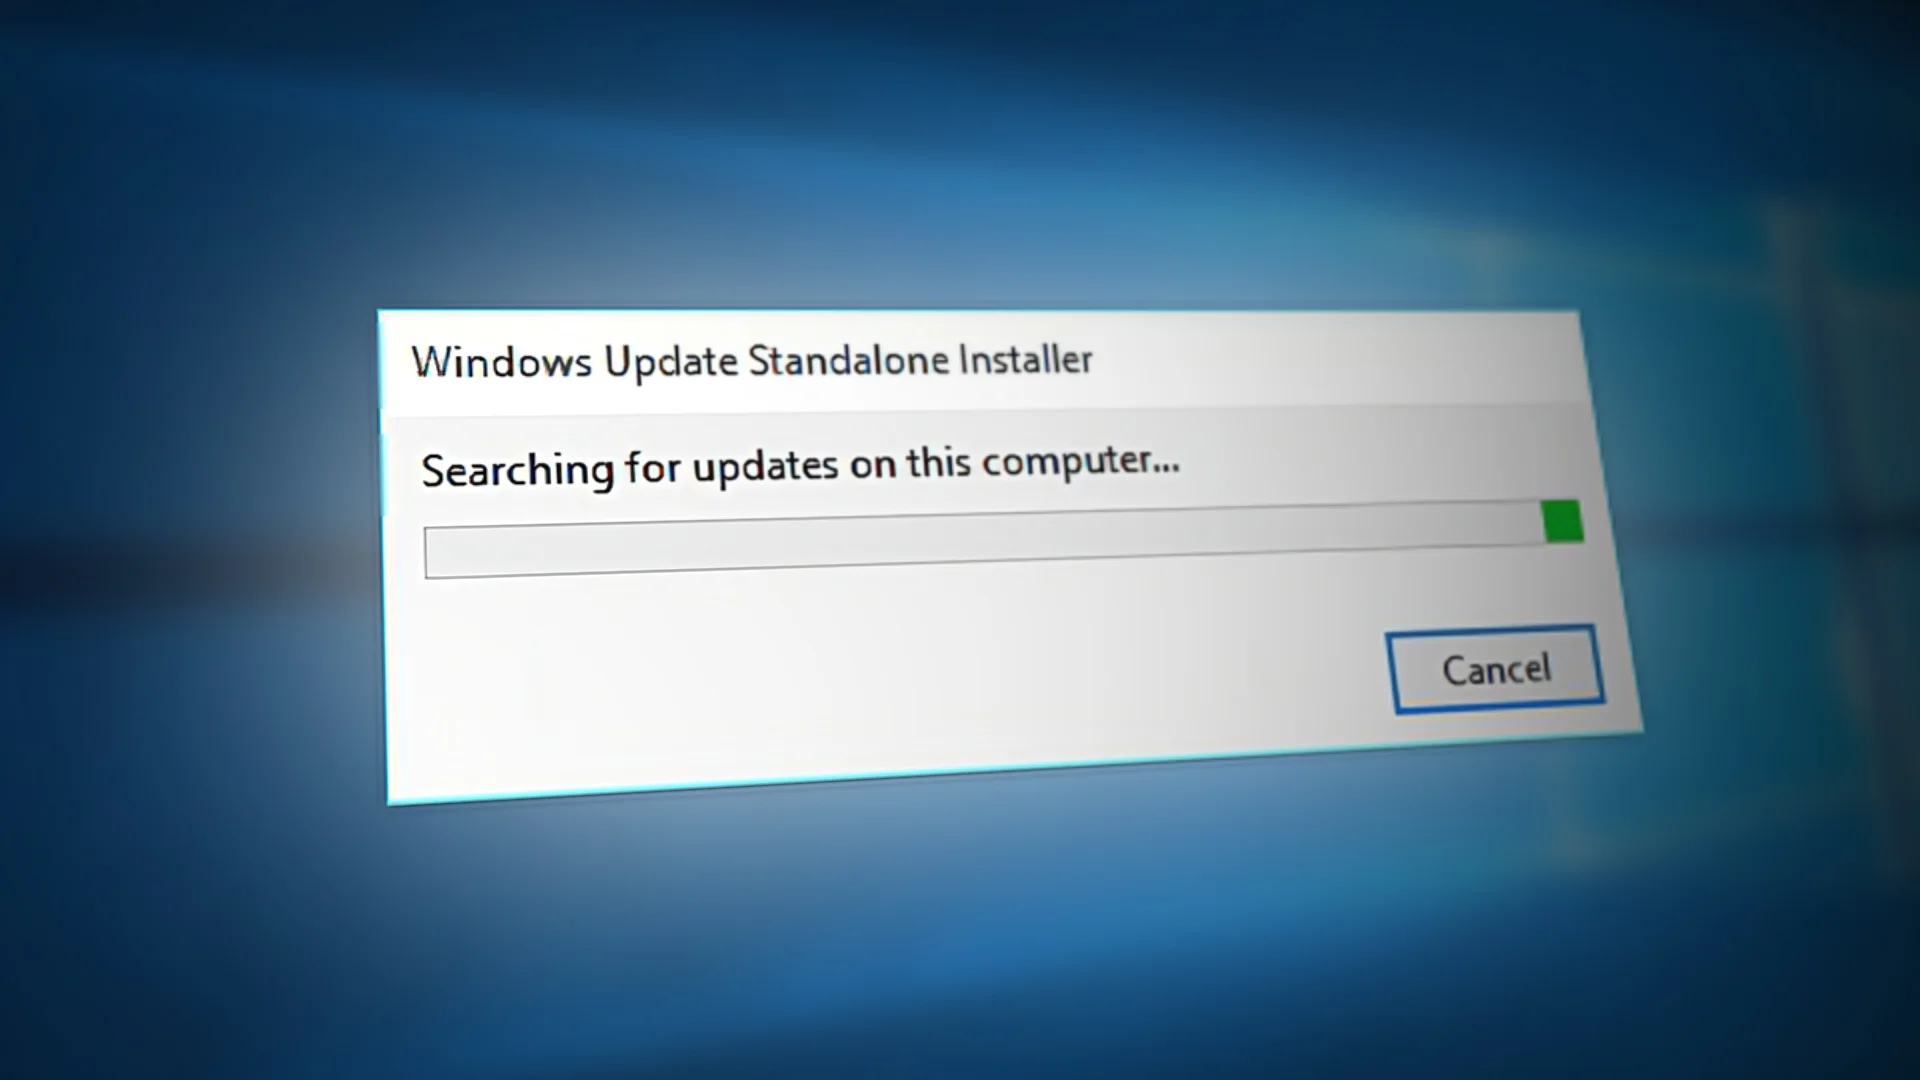 Windows Standalone Installer sitter fast på søk etter oppdateringer - Problem løst!